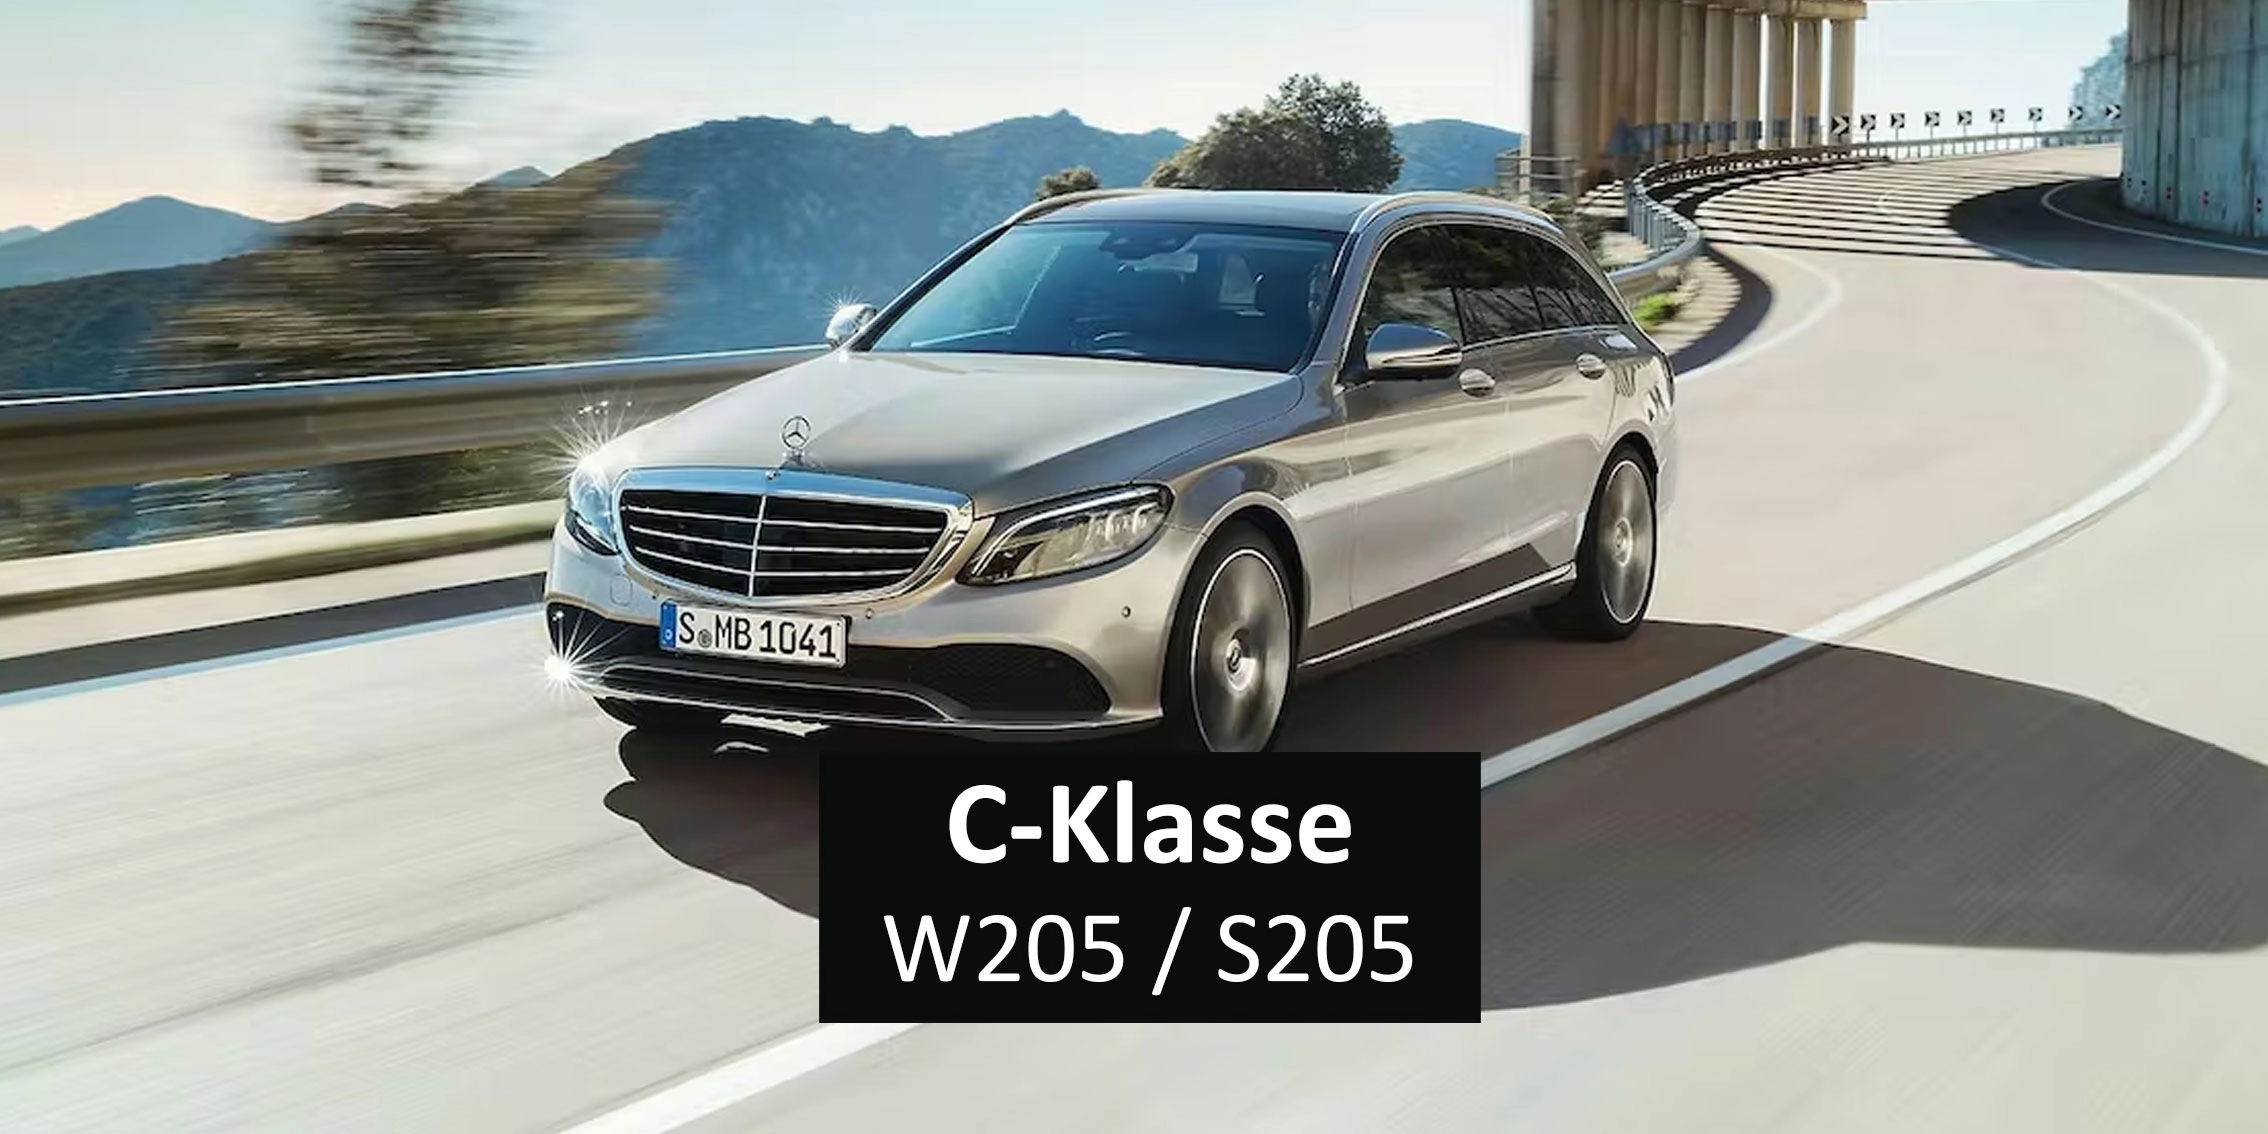 Mercedes benz c klasse 205 teaser